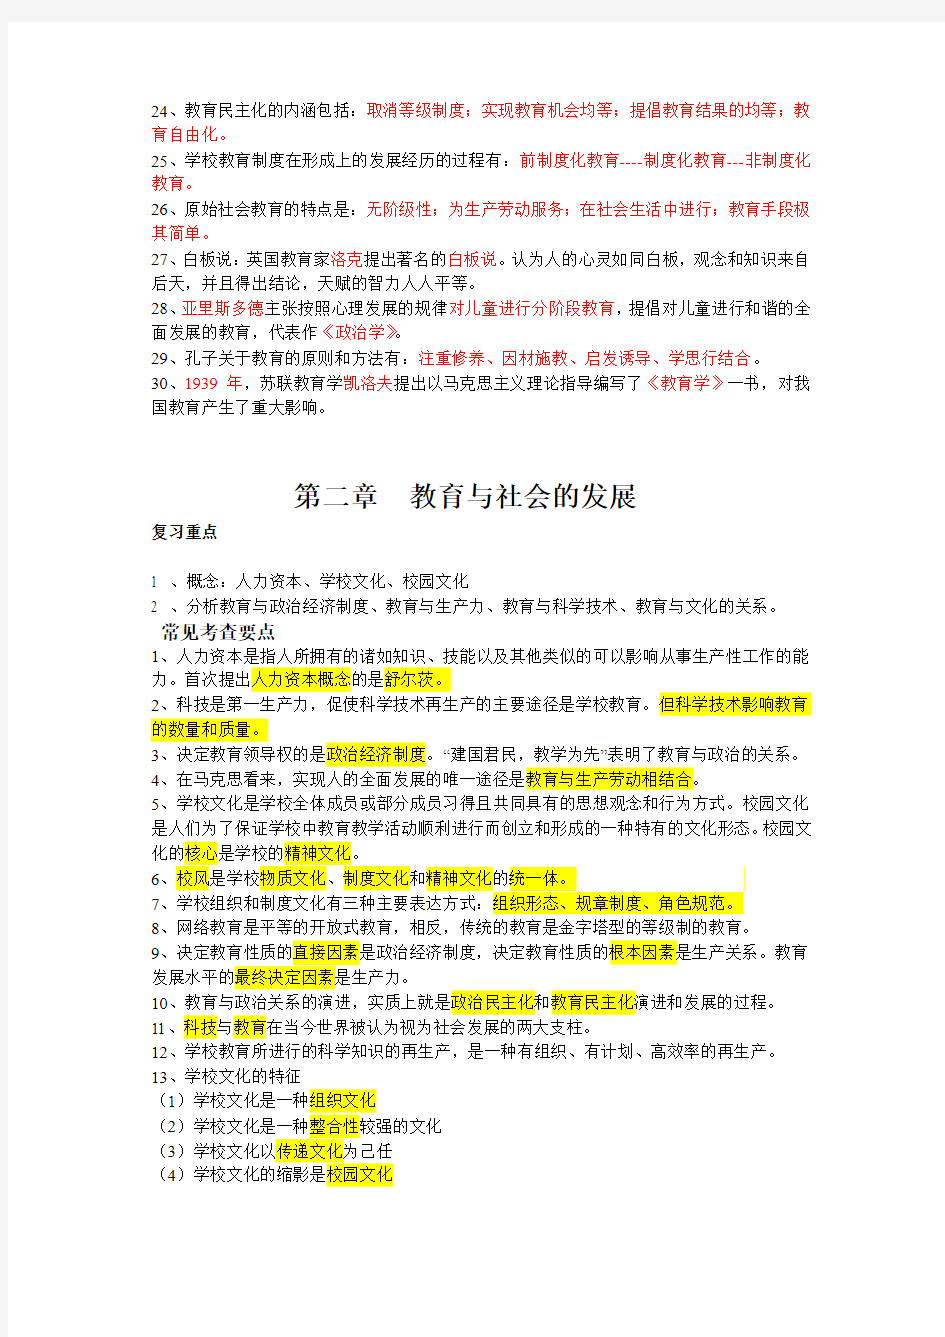 2011江西教师资格证考试大纲和重点笔记